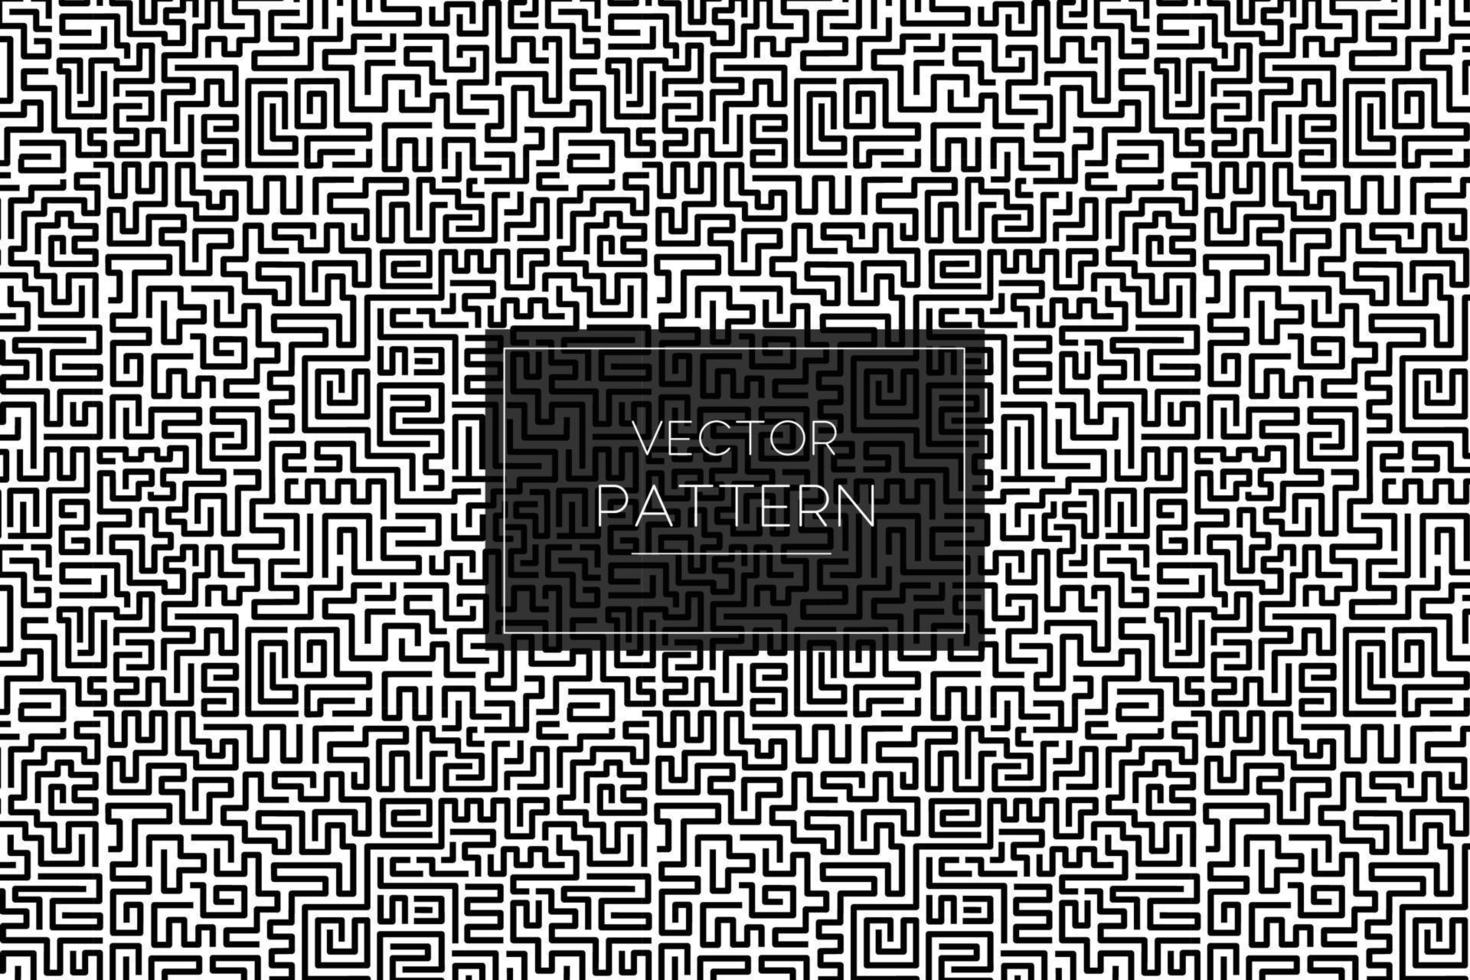 Durcheinander Labyrinth schwarze Linien nahtlose Wiederholungsmuster auf weißem Hintergrund vektor